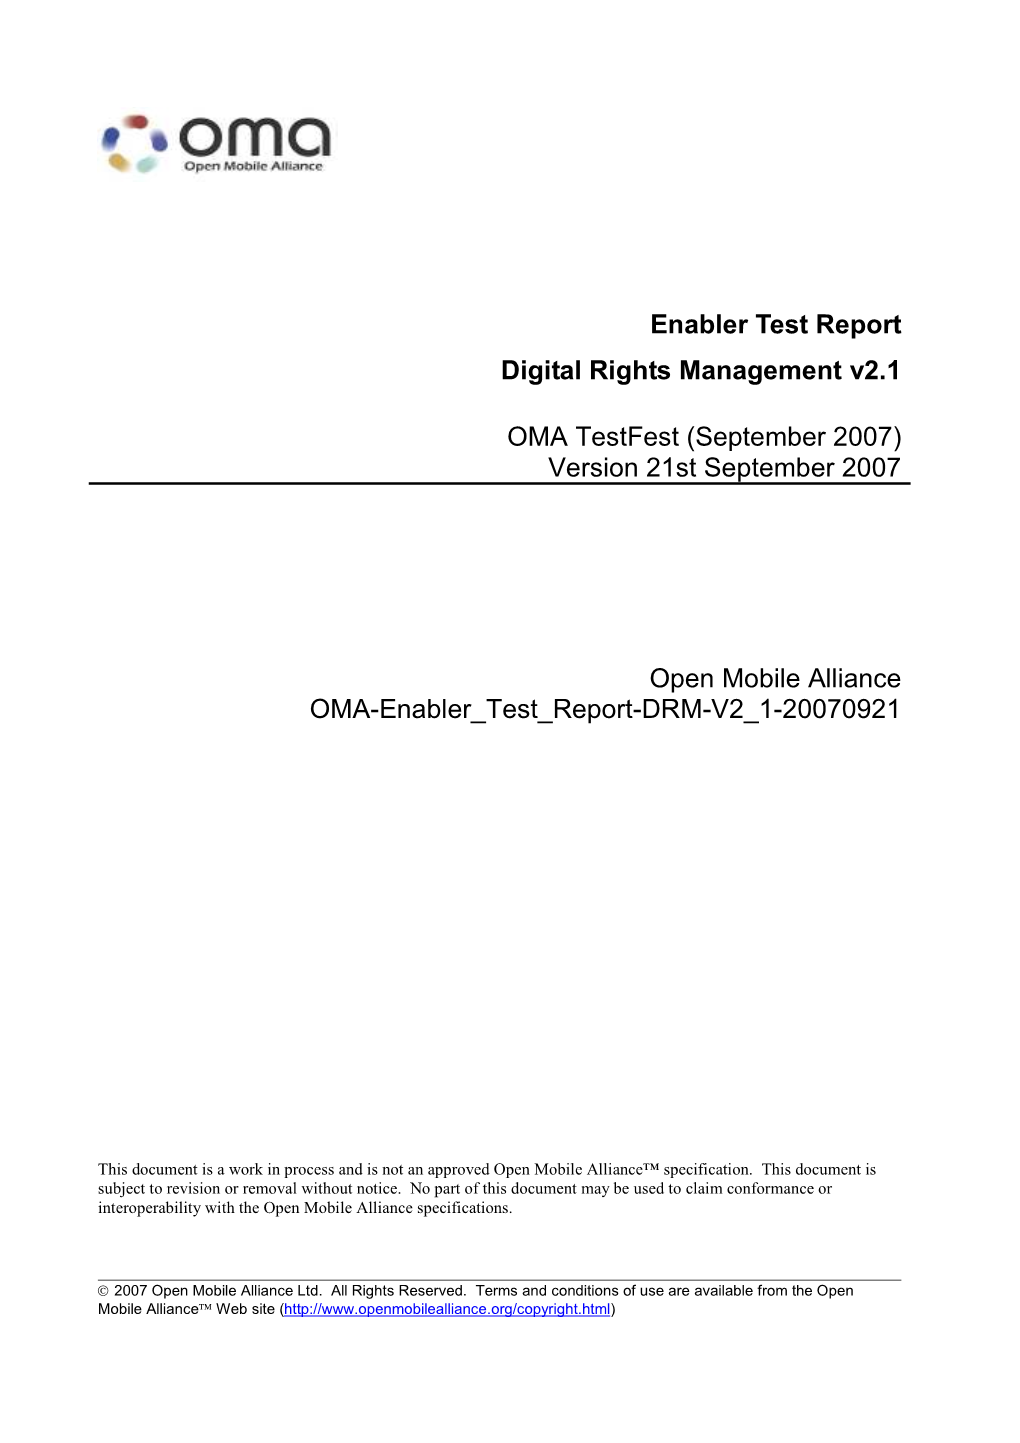 Enabler Test Report Digital Rights Management V2.1 OMA Testfest